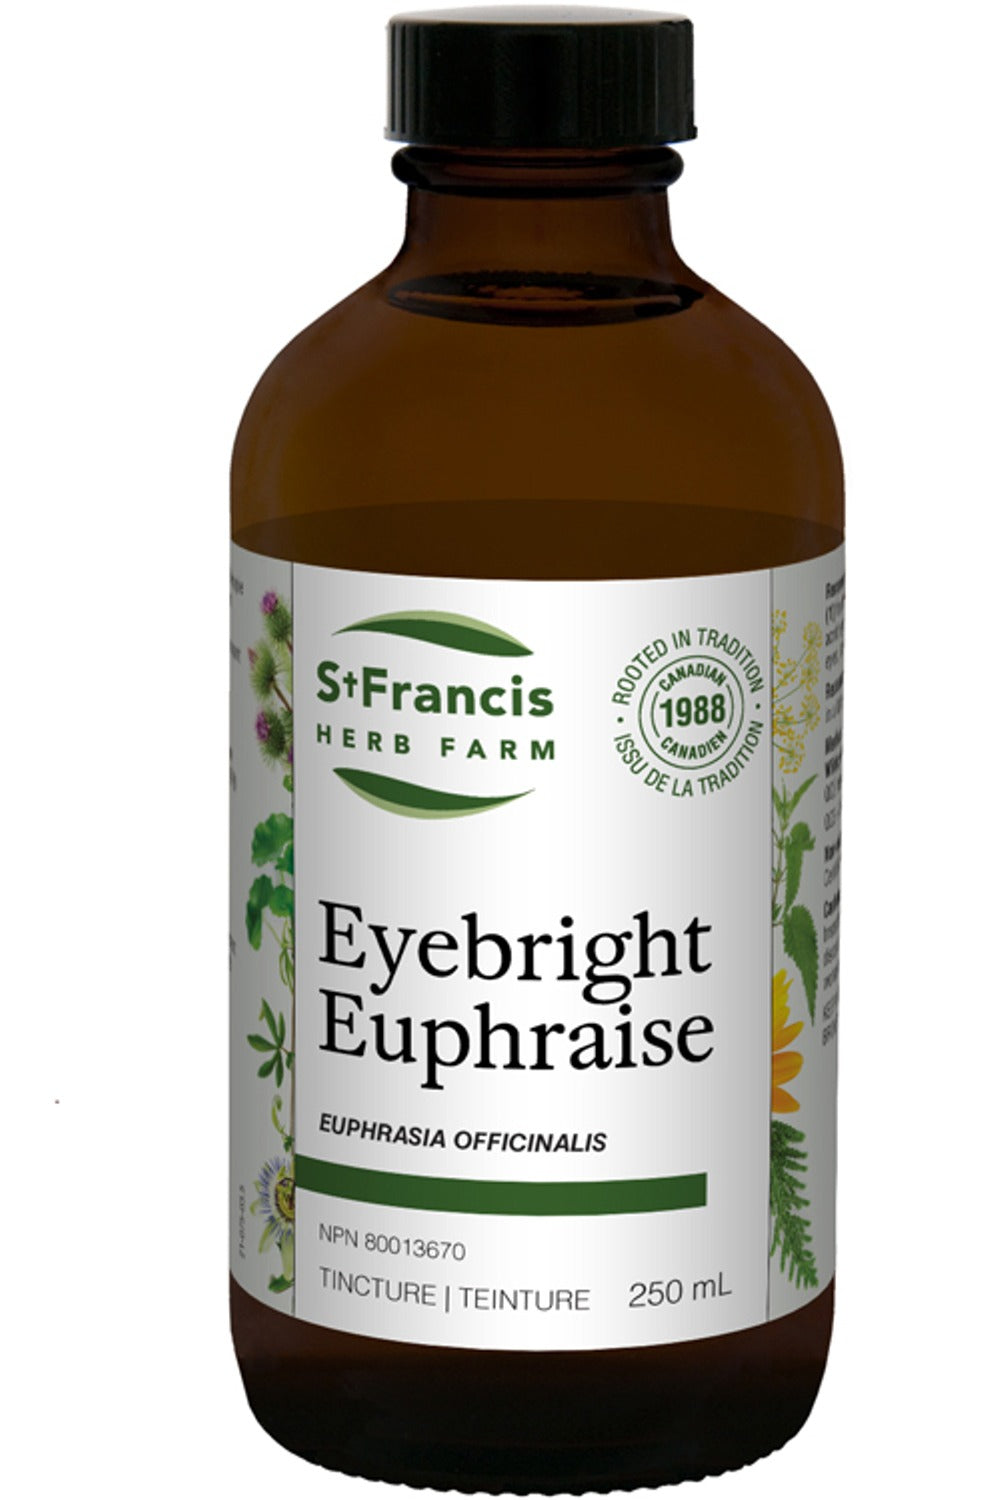 ST FRANCIS HERB FARM Eyebright (250 ml)